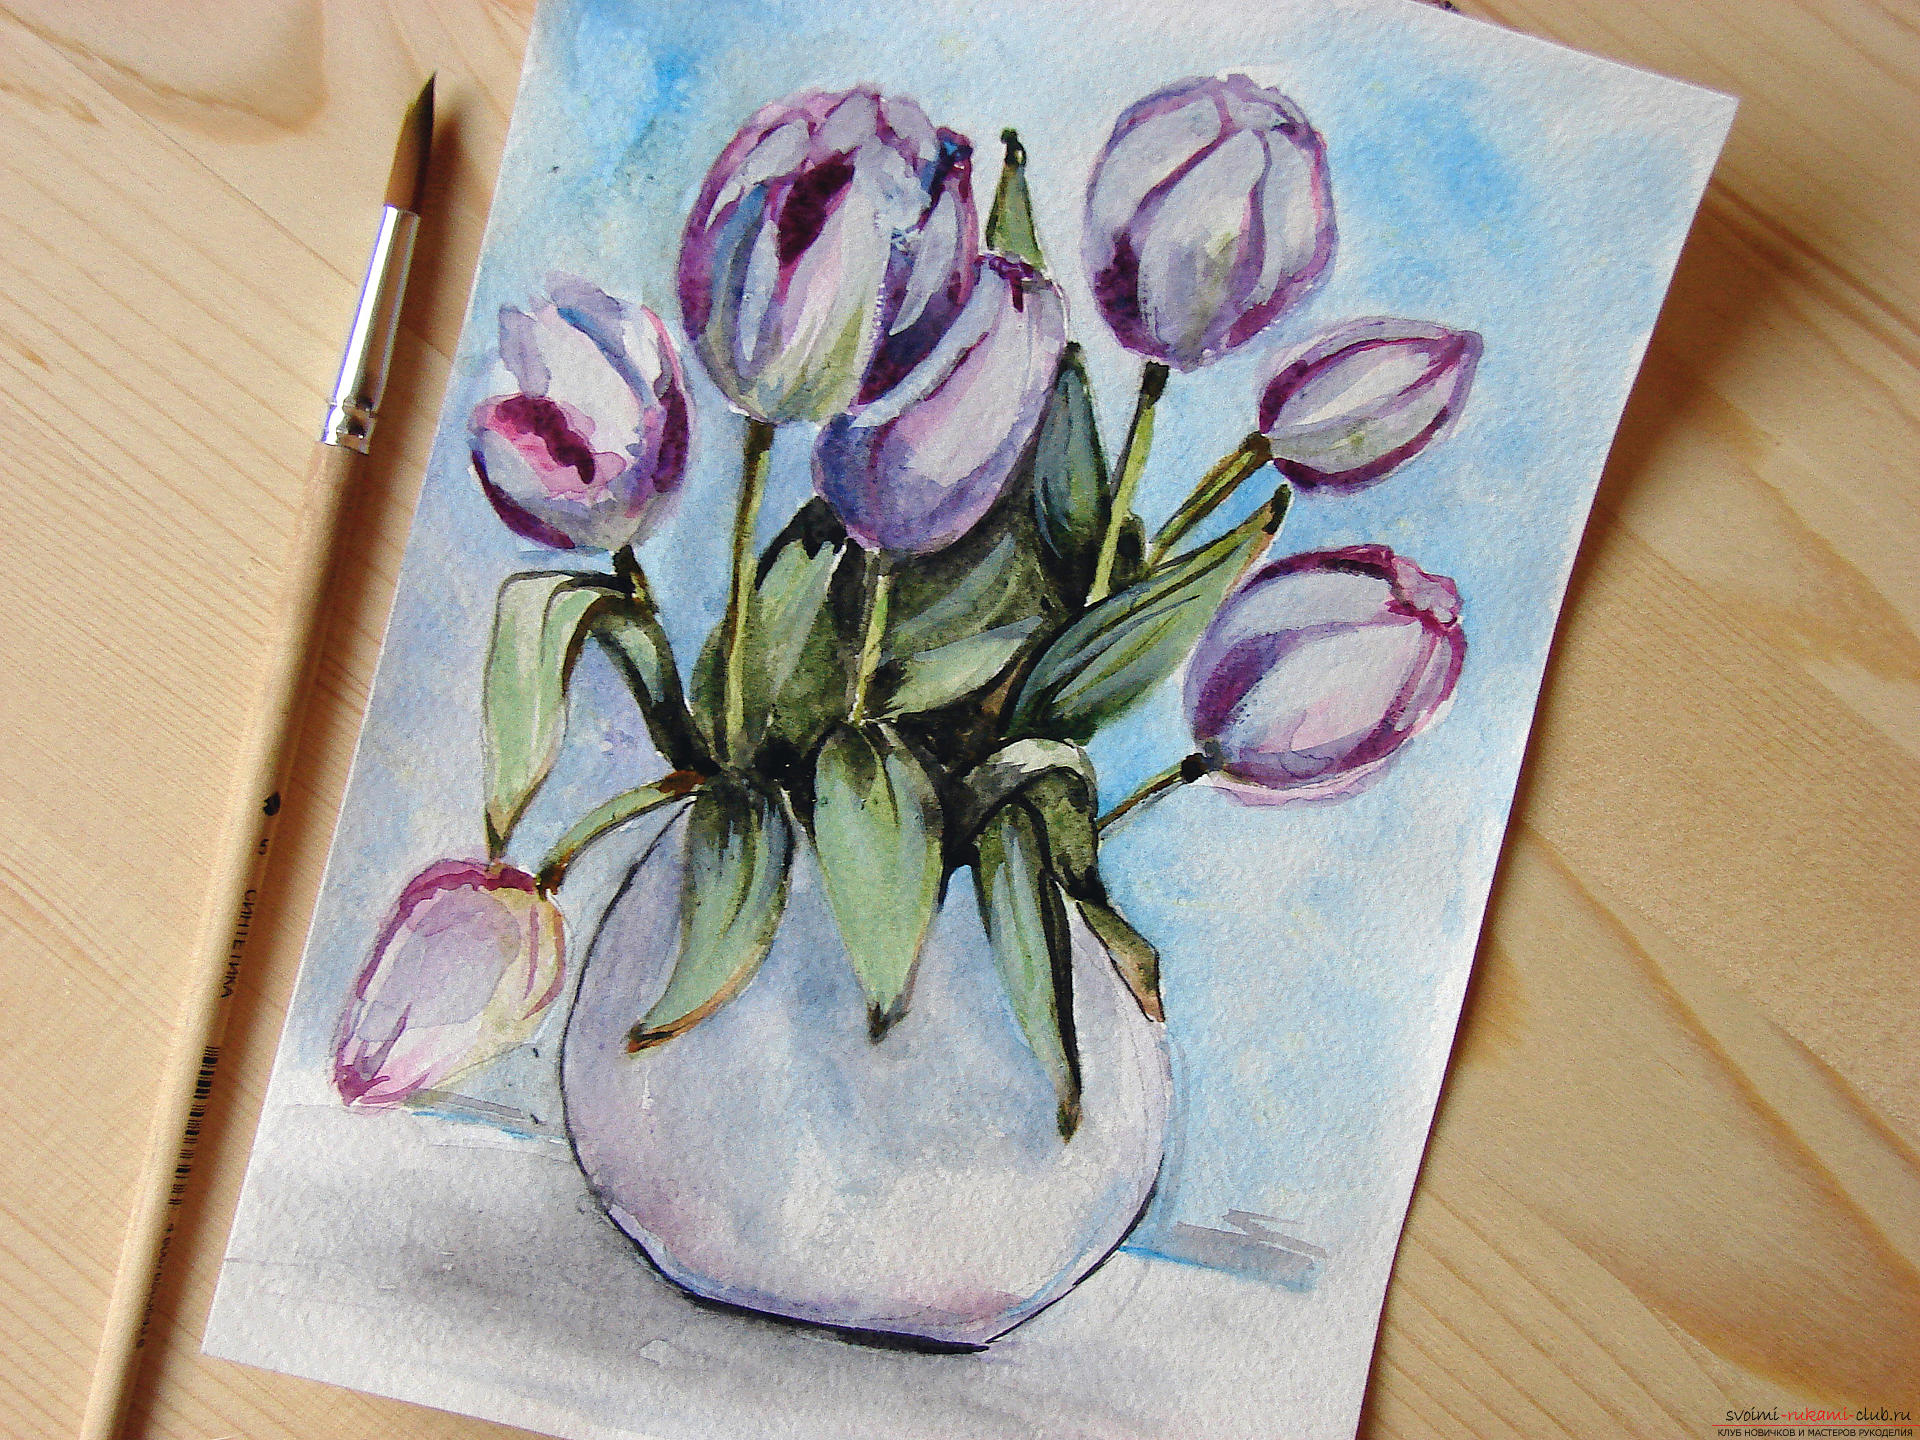 Мастер-класс по рисованию с фото научит как нарисовать цветы, подробно описав как рисуются тюльпаны поэтапно.. Фото №28